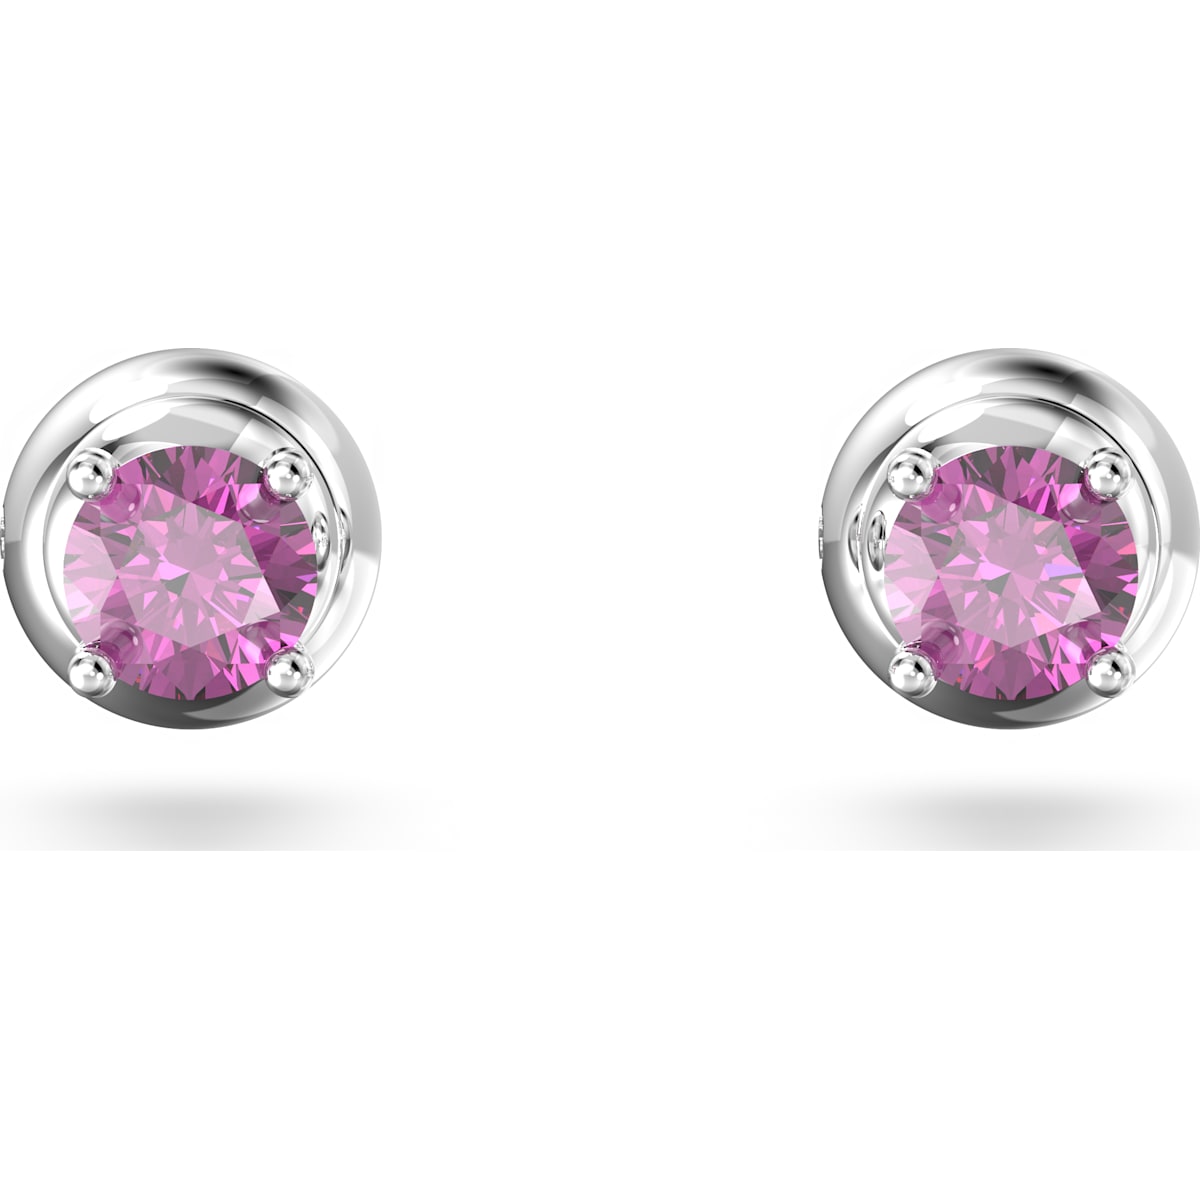 Swarovski Stilla stud earrings, Round cut, Purple, Rhodium plated